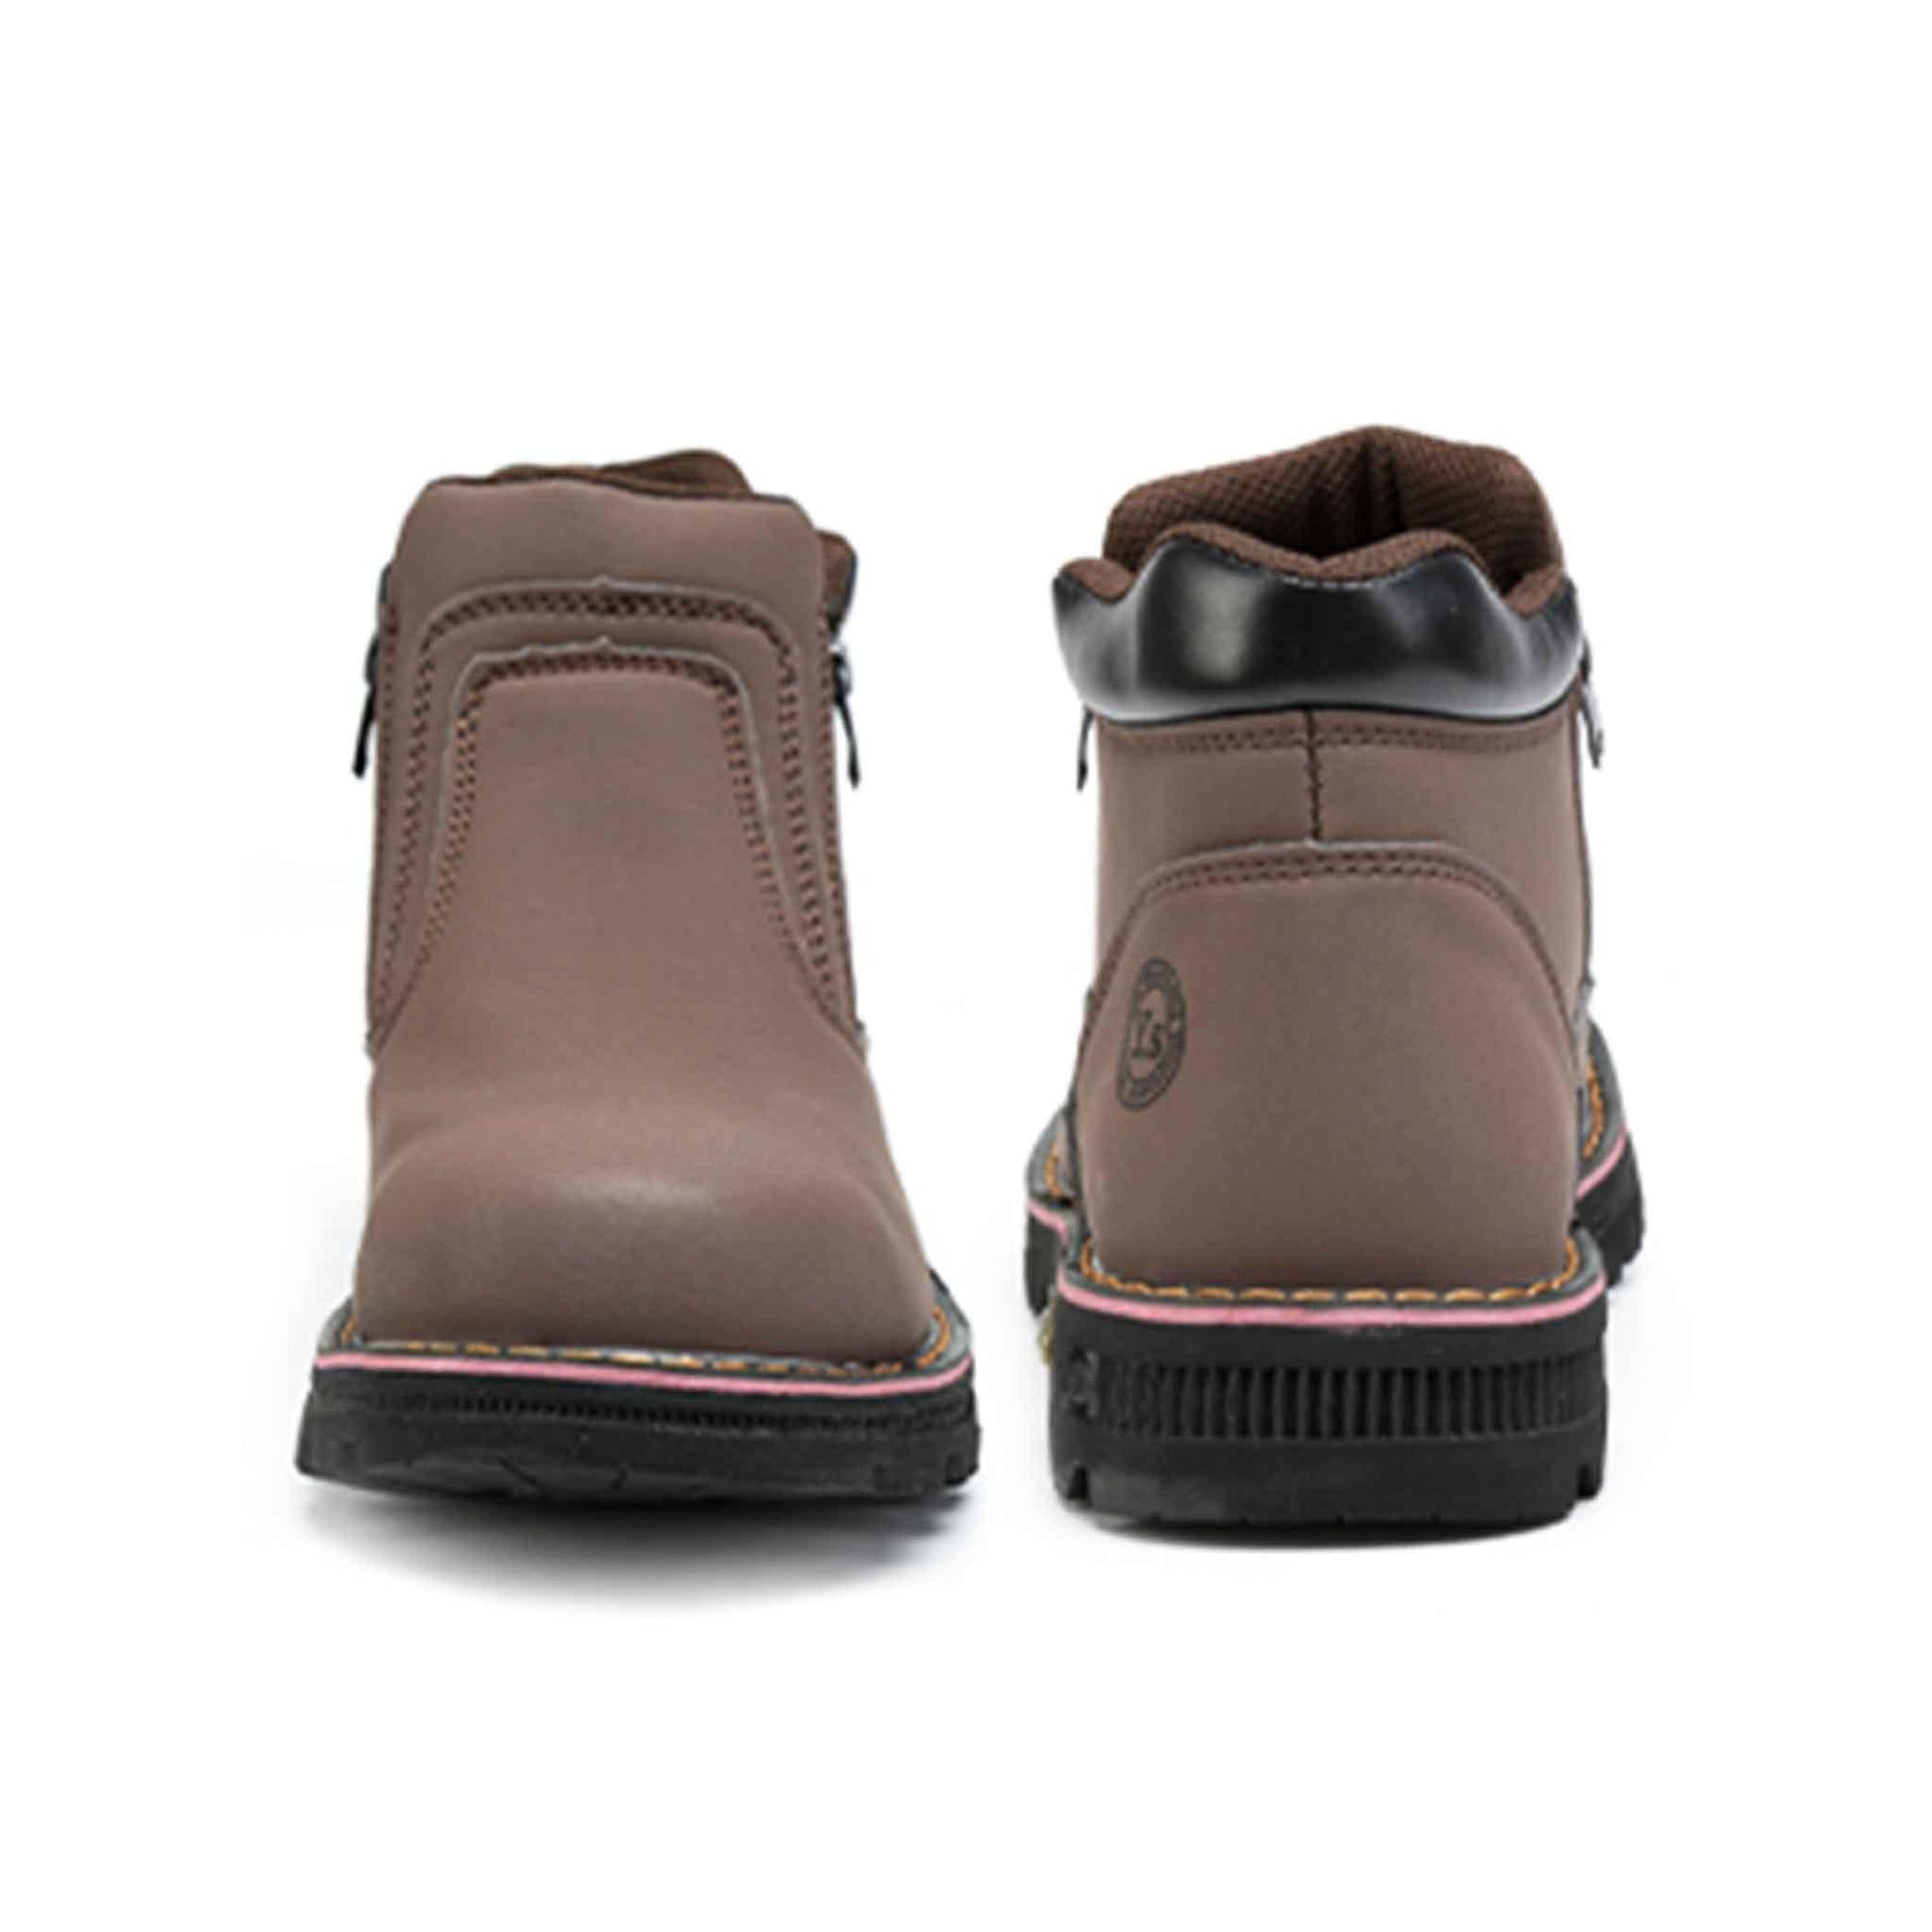 Men's Steel Toe Side Zip Boots - Slip Resistant | B129 - USINE PRO Footwear